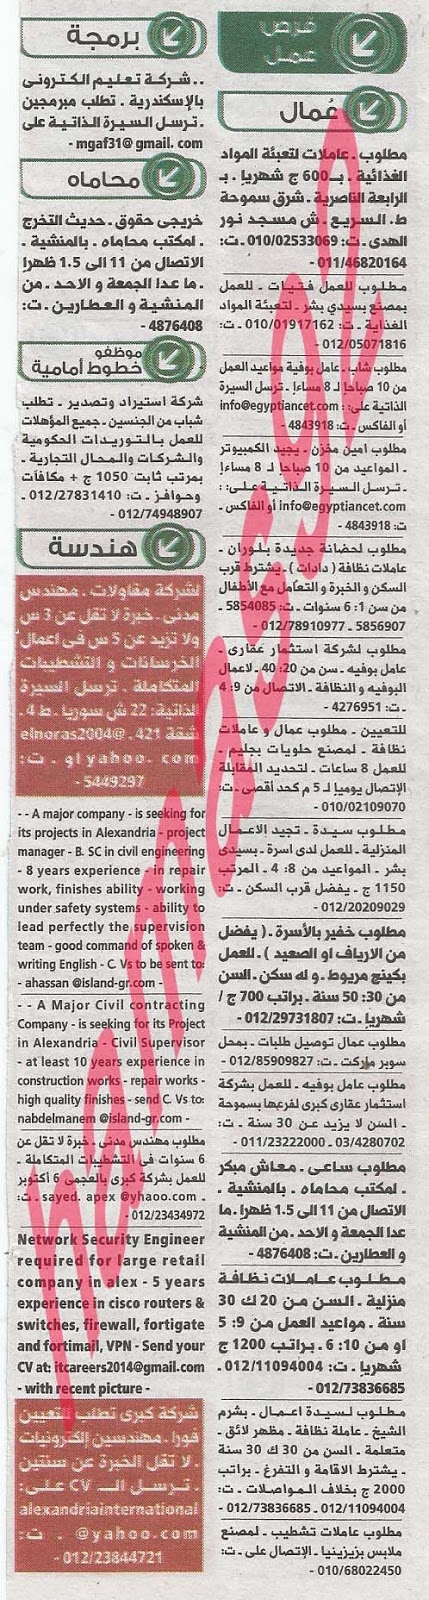 وظائف خالية فى جريدة الوسيط الاسكندرية الاثنين 29-07-2013 %D9%88+%D8%B3+%D8%B3+5